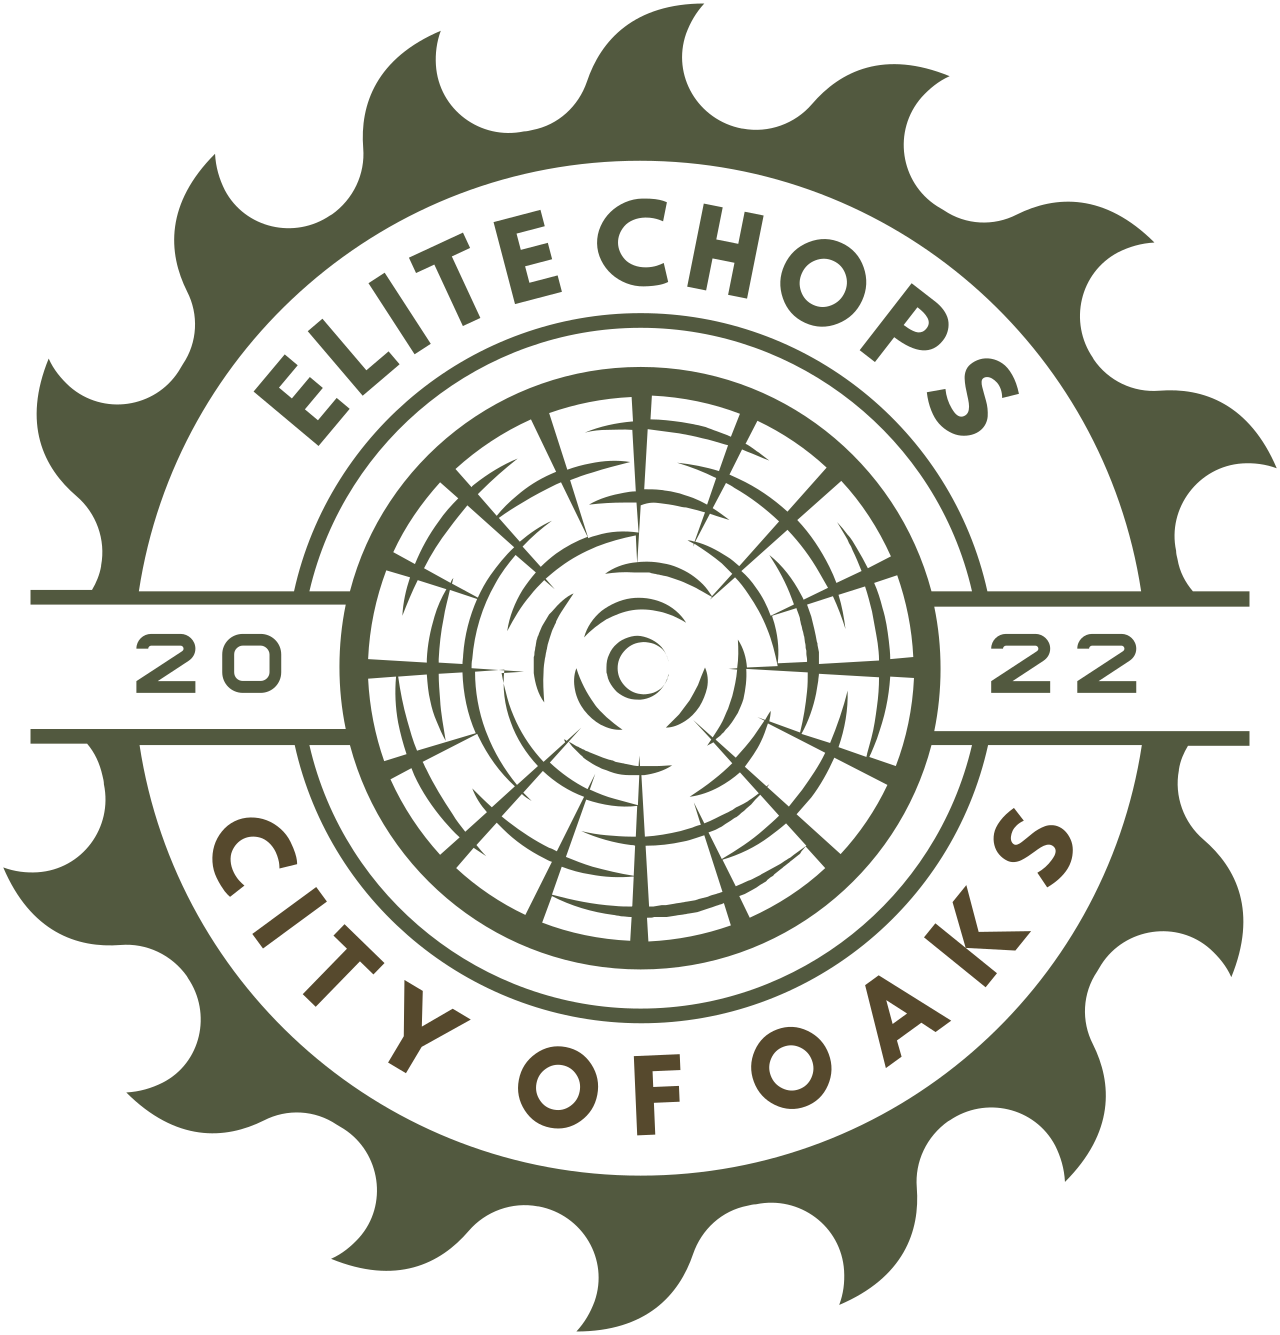 ELITE CHOPS's web page